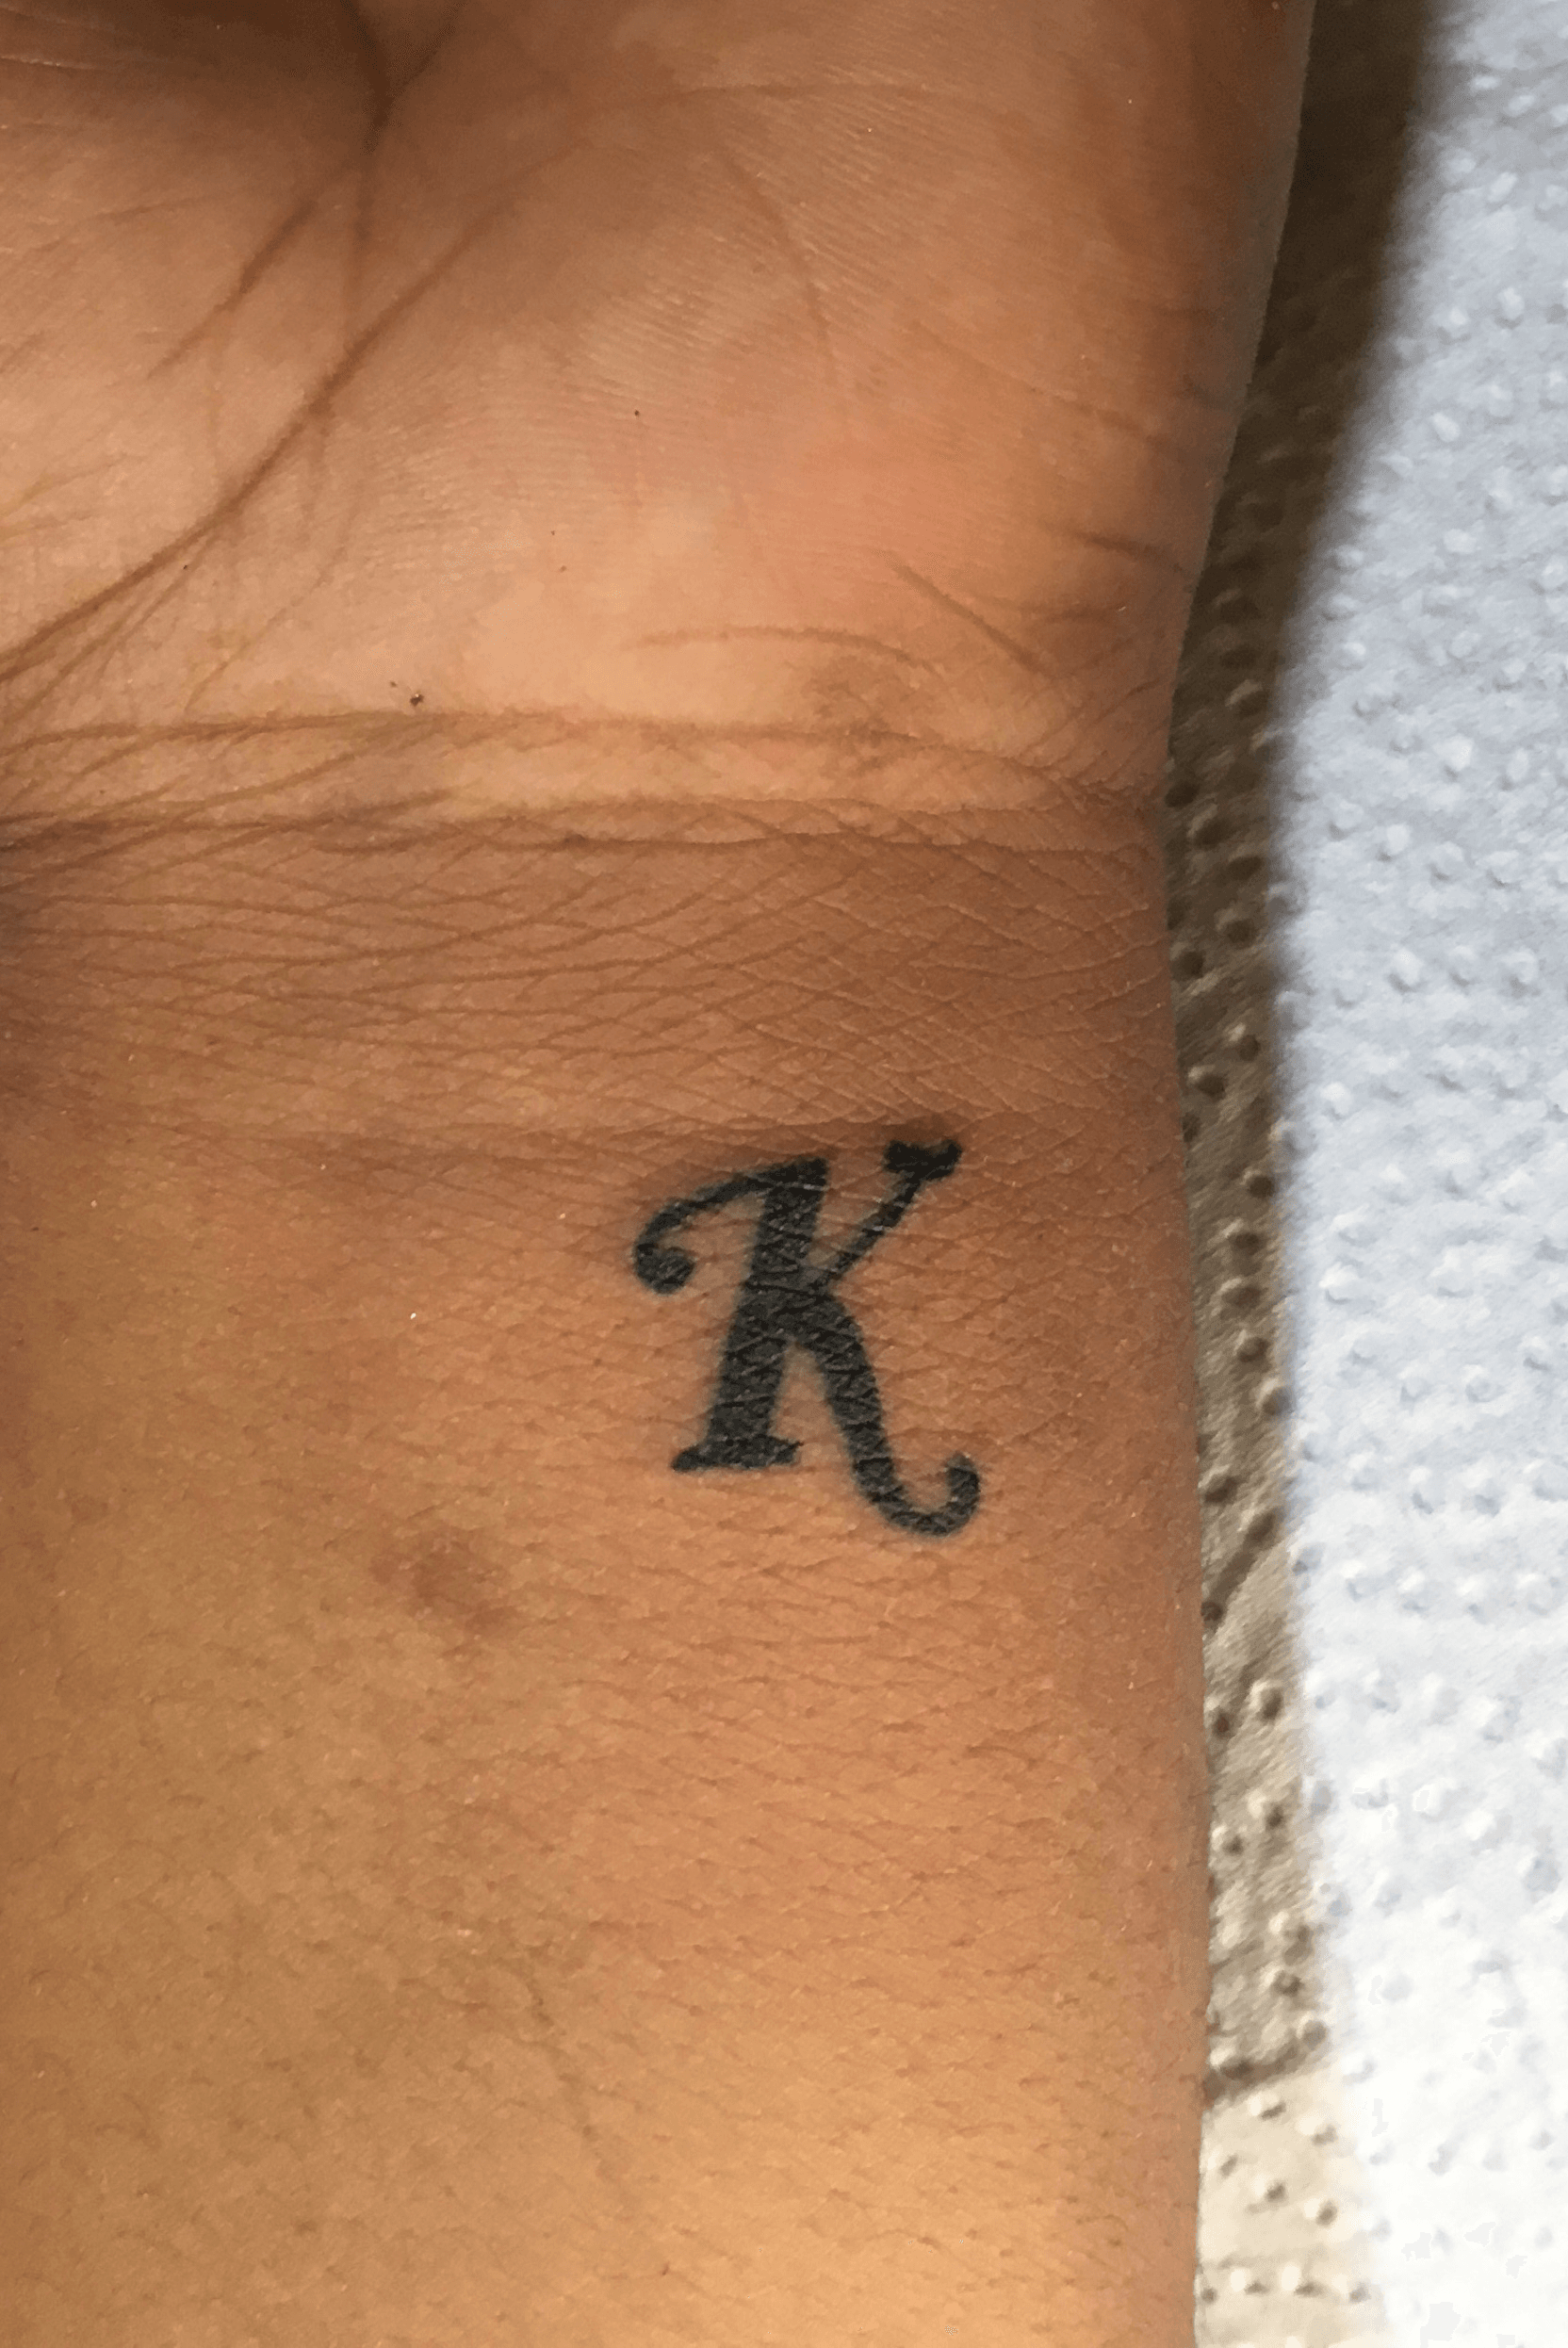 Voorkoms Name K Letter Body Temporary Tattoo Waterproof For Girls Men Women  11x6 cm : Amazon.in: Beauty